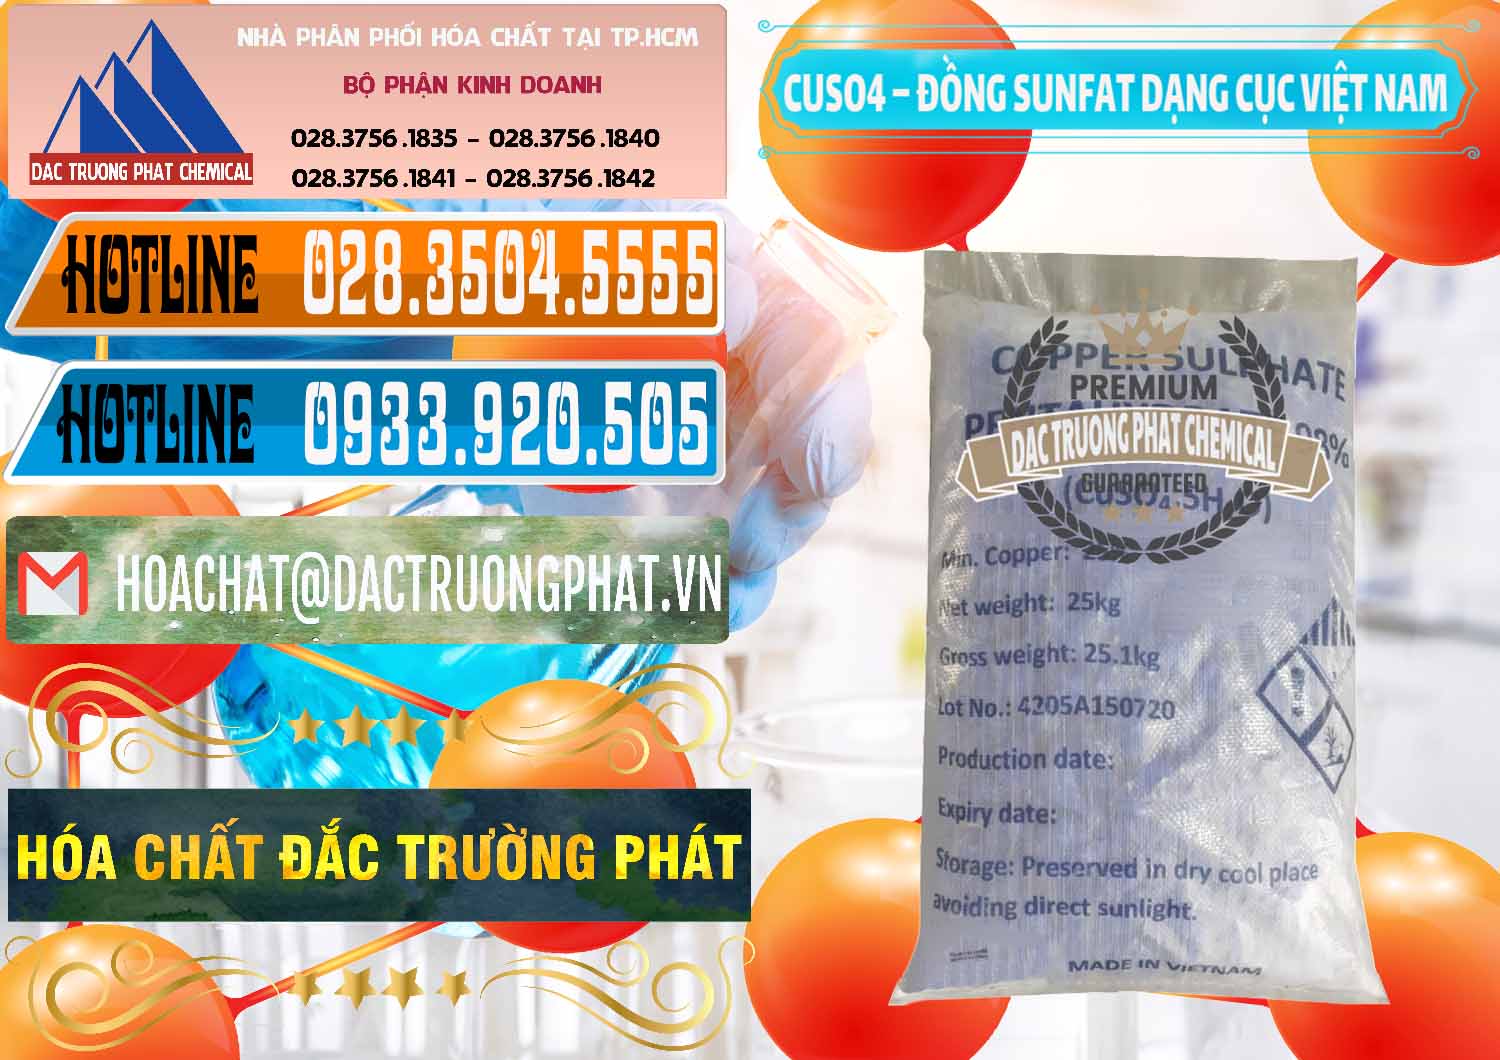 Cty cung ứng và bán CUSO4 – Đồng Sunfat Dạng Cục Việt Nam - 0303 - Cty chuyên bán ( cung cấp ) hóa chất tại TP.HCM - stmp.net